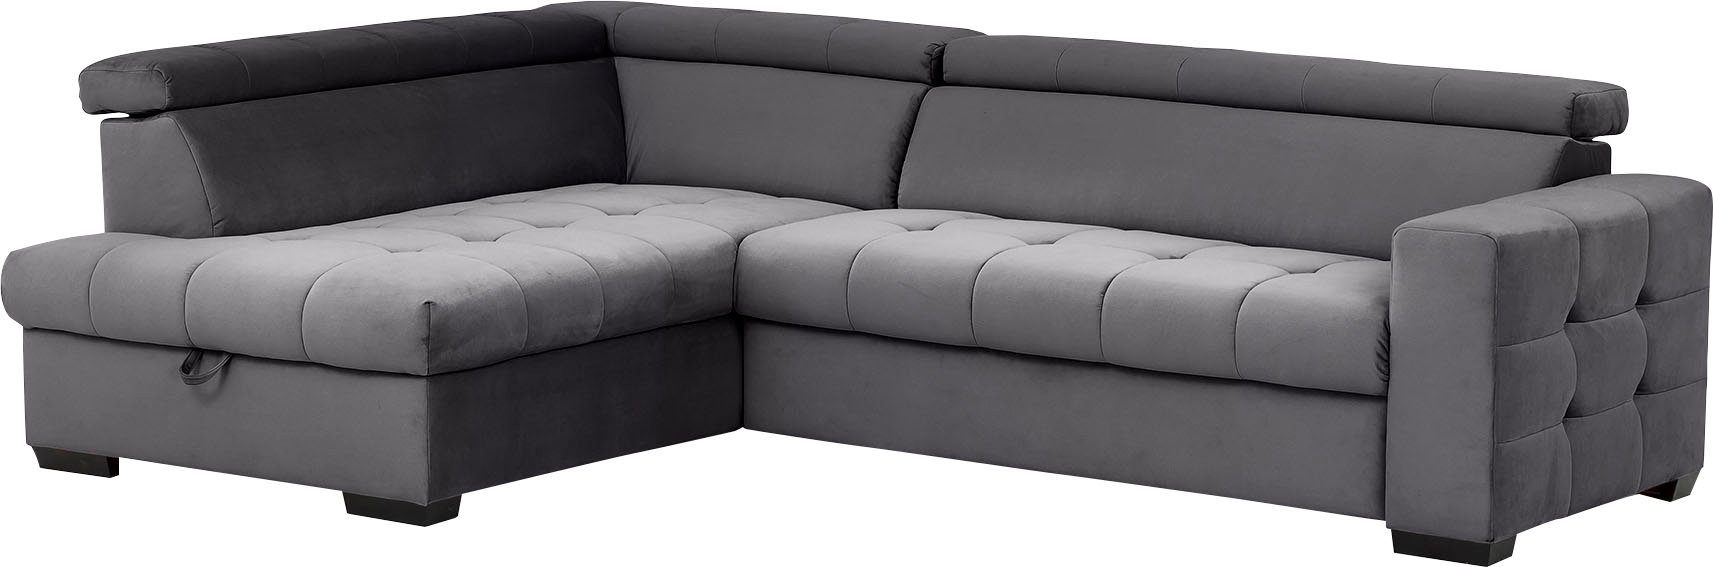 im und Bettkasten fashion sofa mit exxpo Sitzbereich, Steppung Otusso, Bettfunktion Ecksofa - Wahlweise